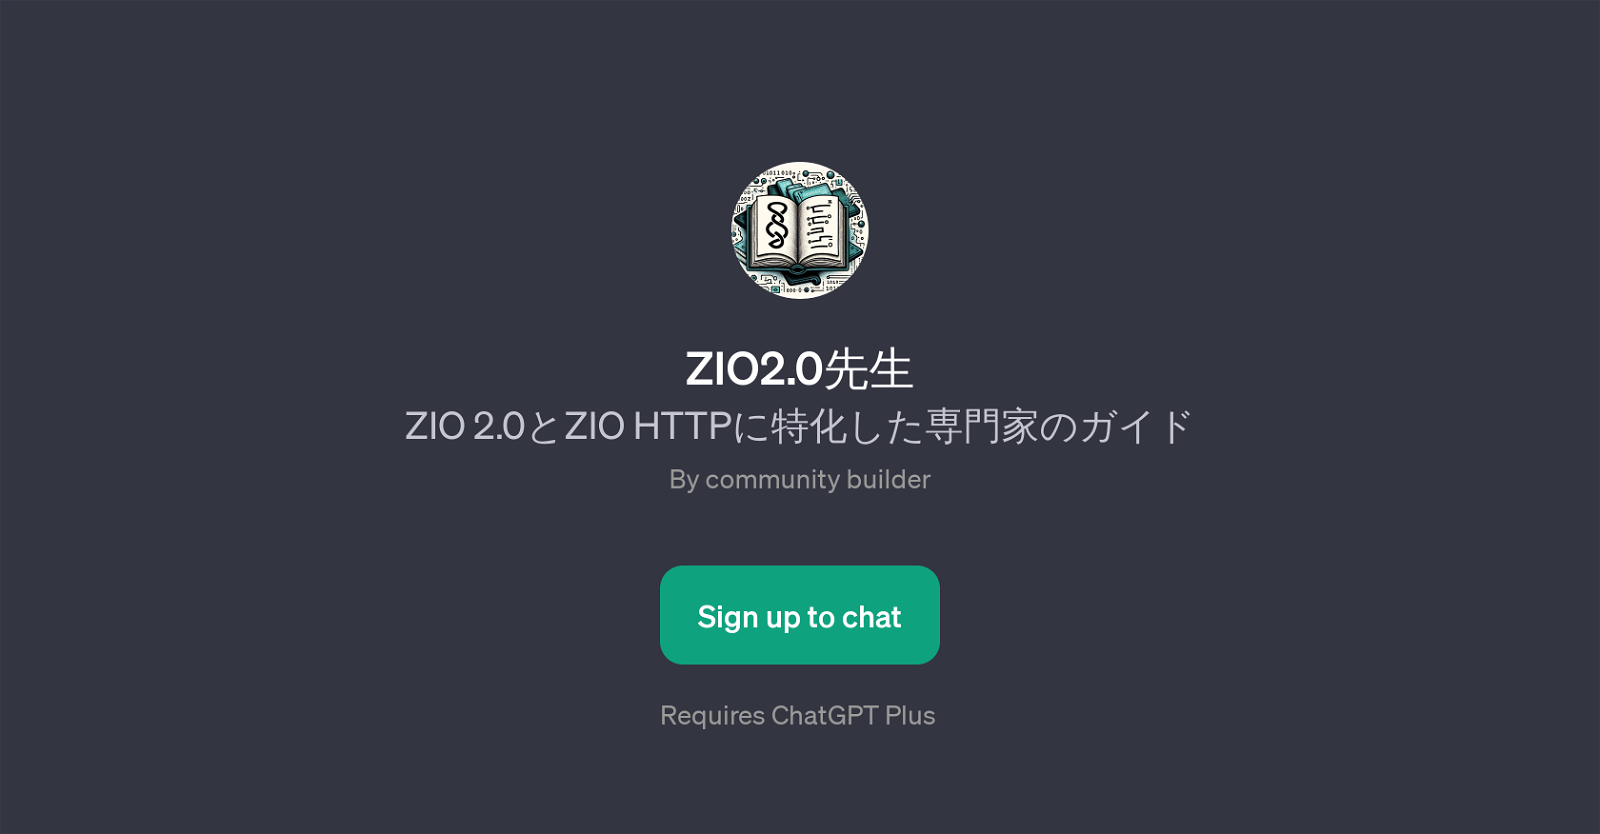 ZIO2.0 website